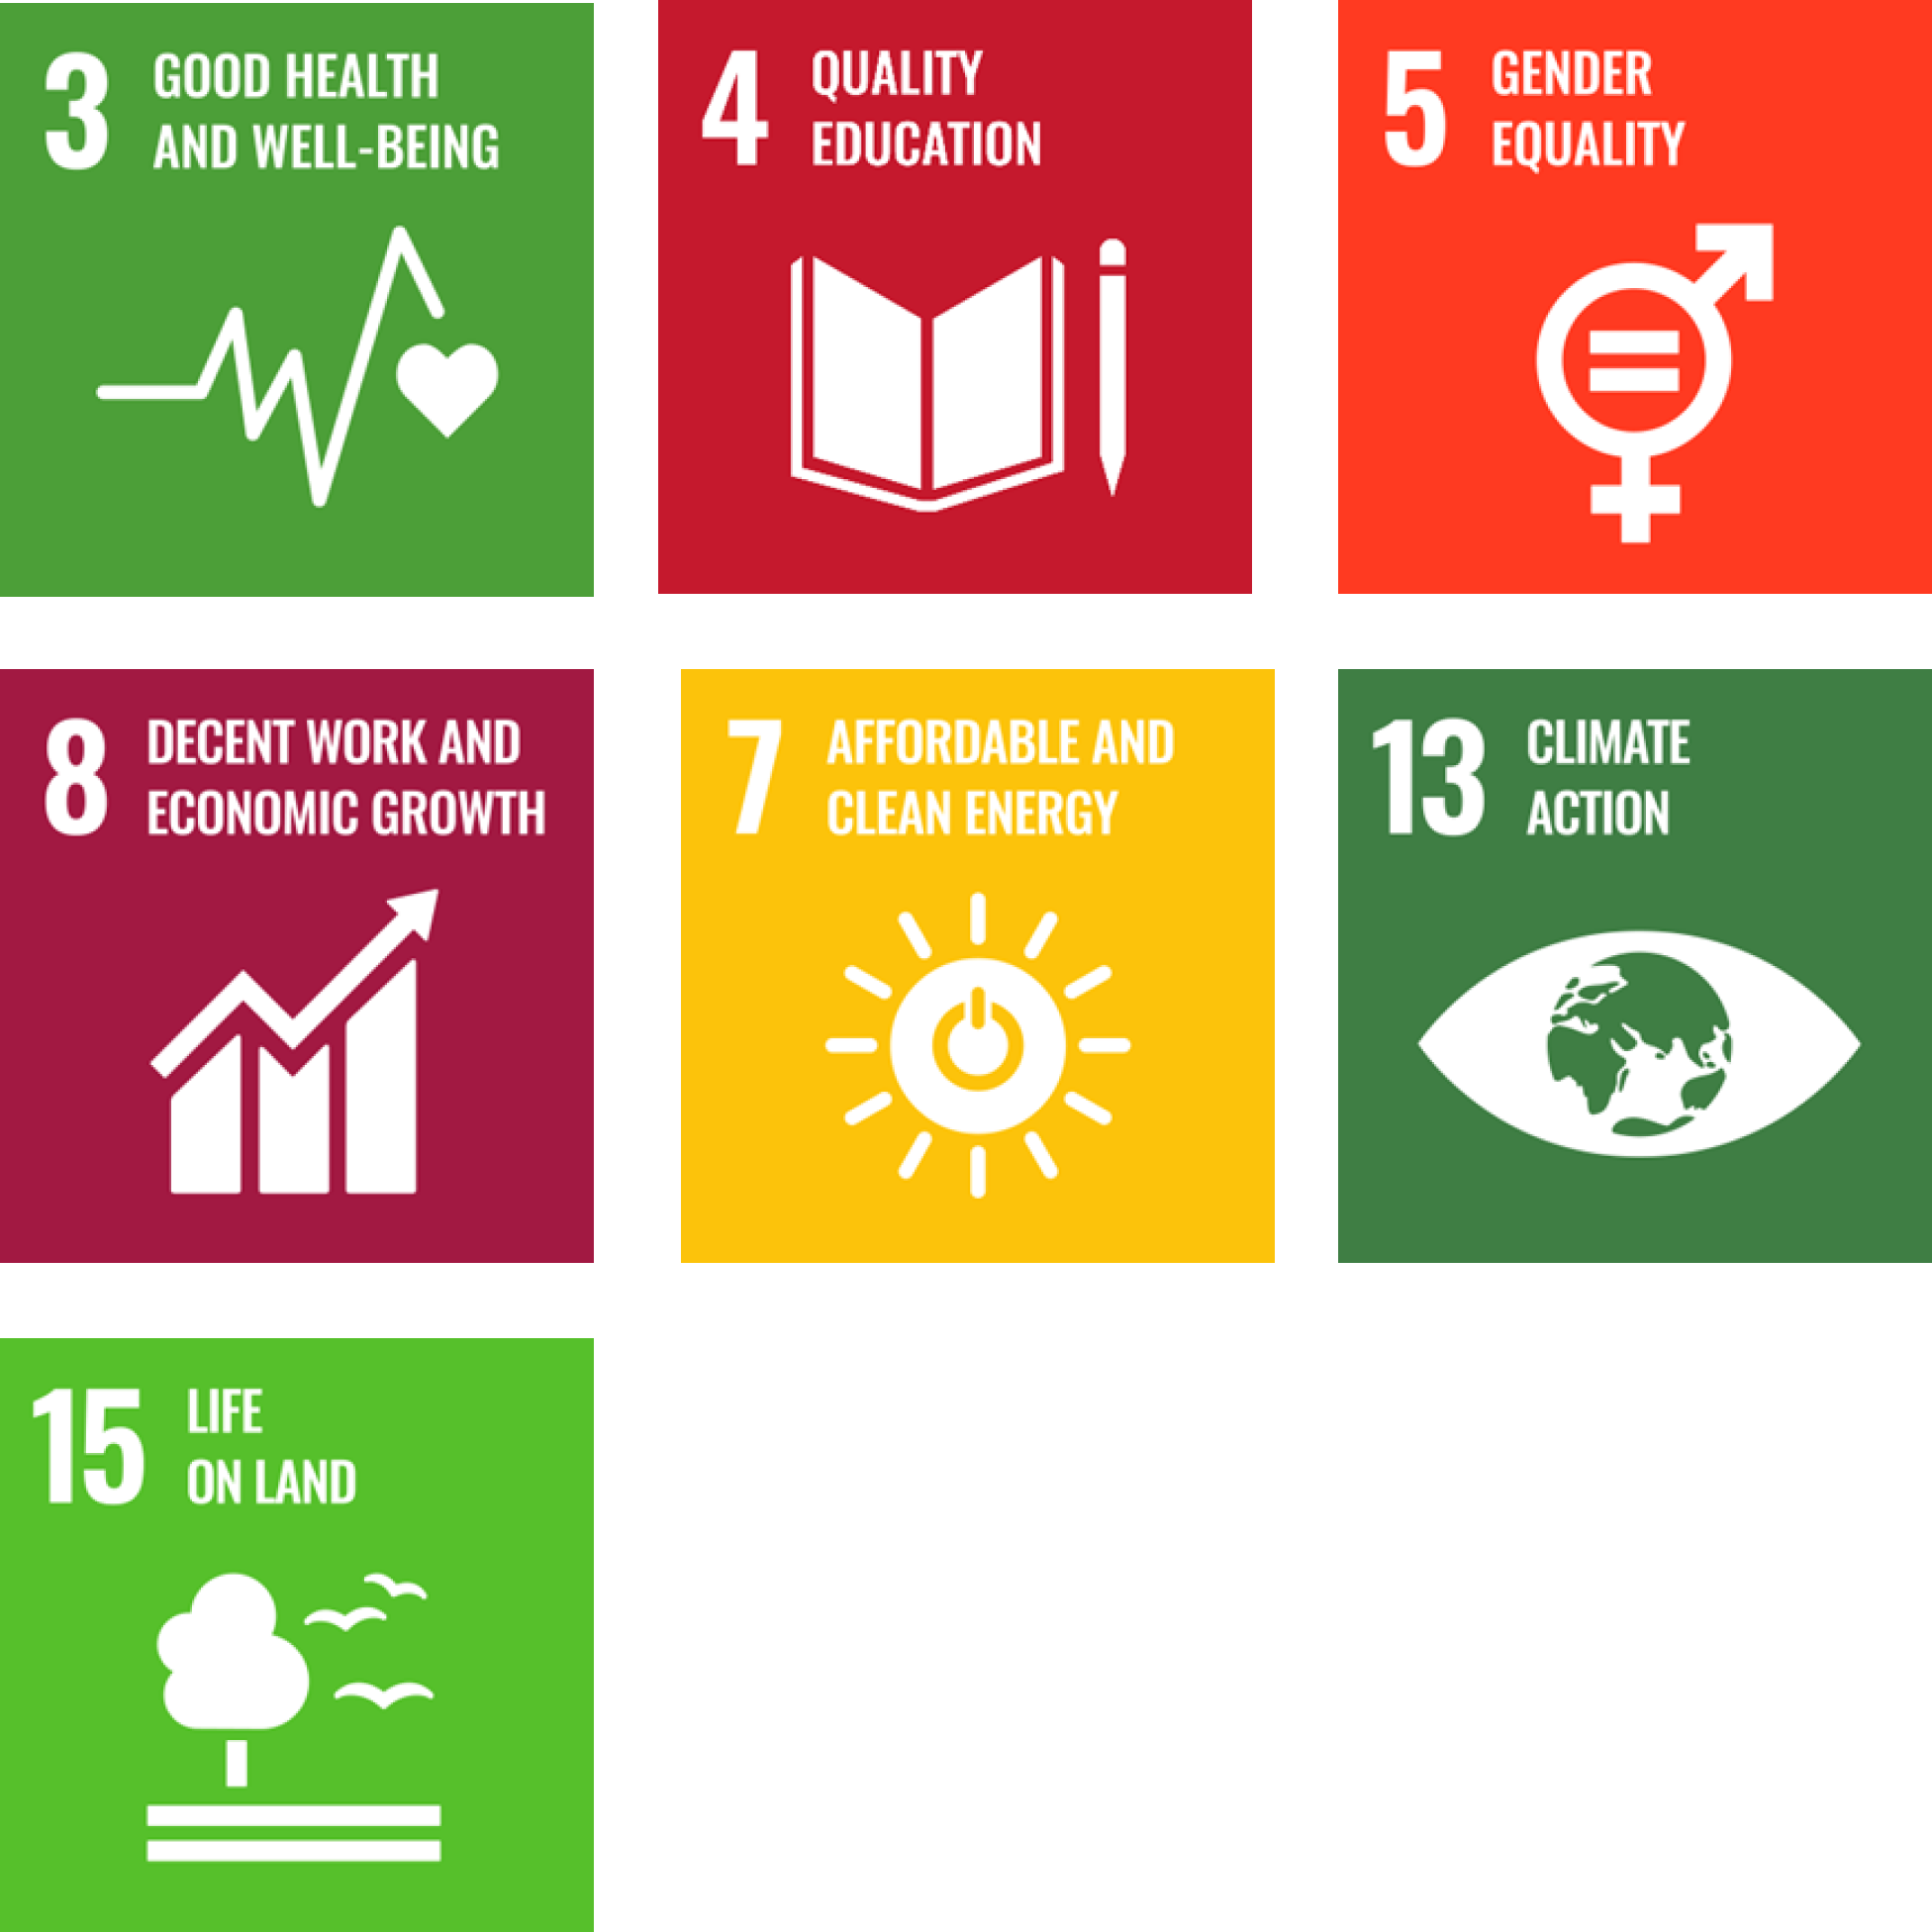 SDG highlights